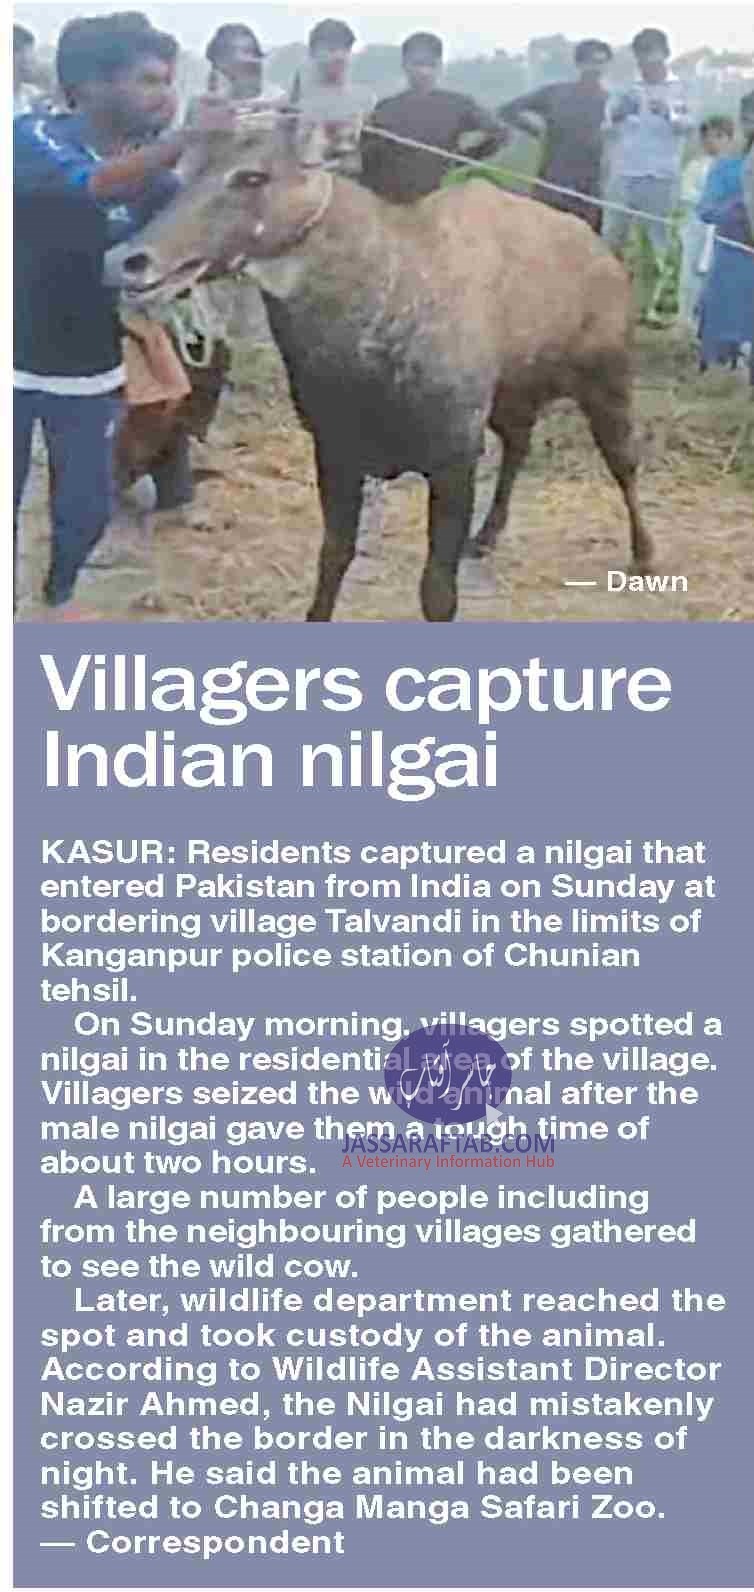 Indian nilgaii shifted to Changa Manga Park